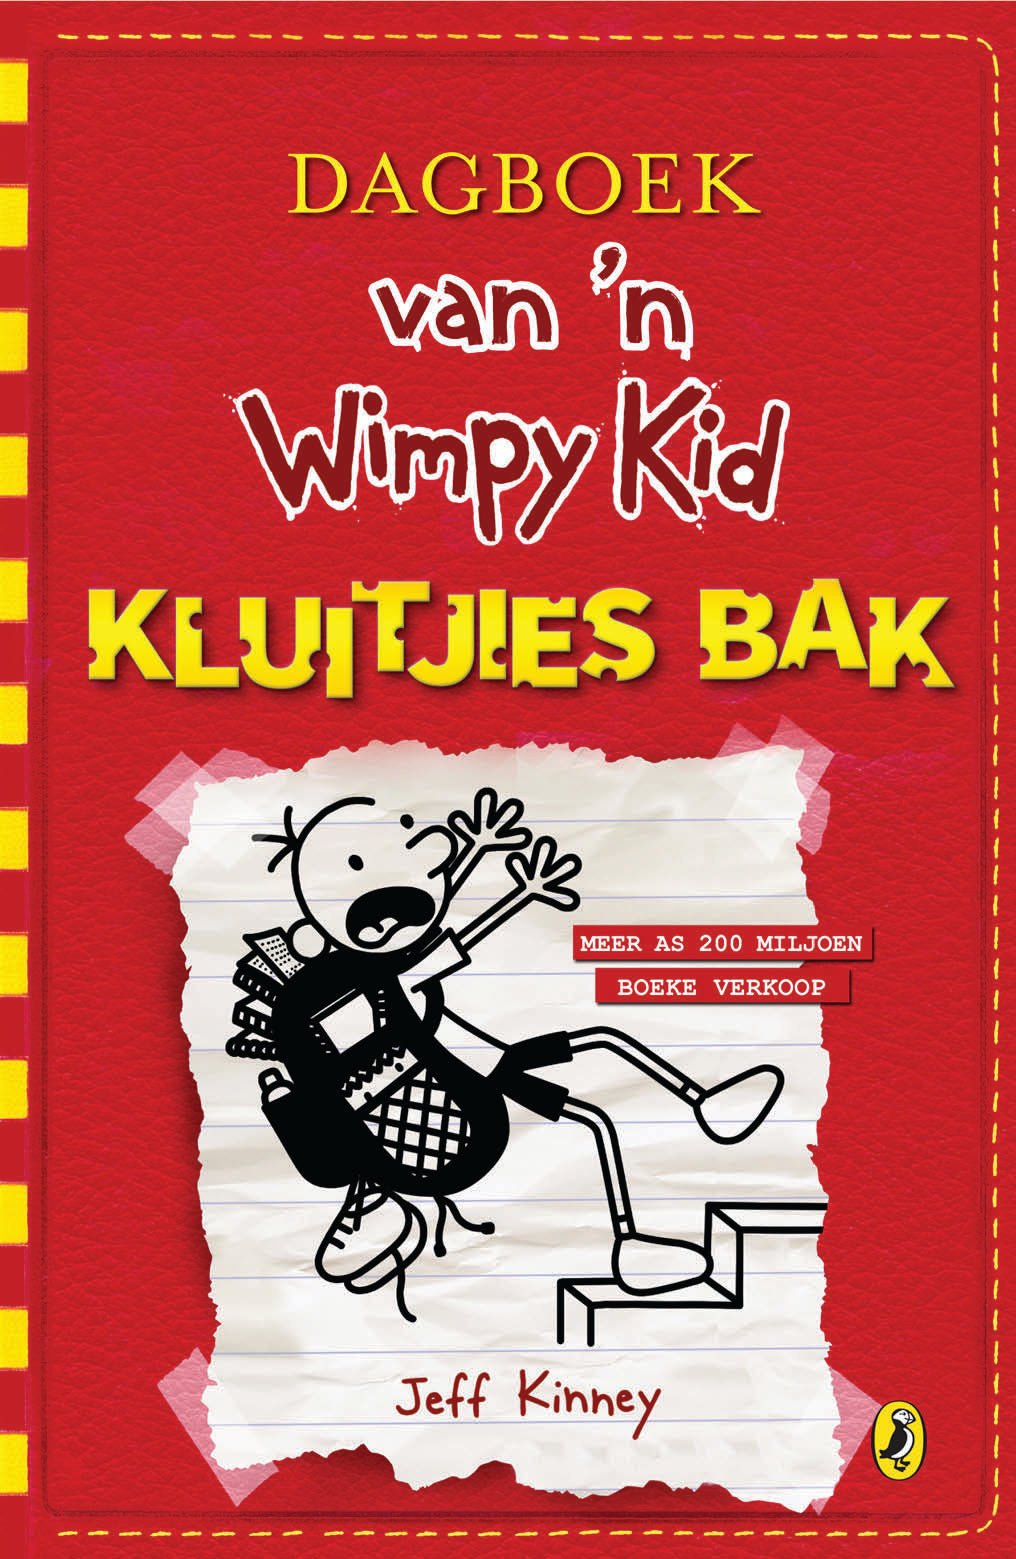 Dagboek van 'n Wimpy kid 11: Kluitjies Bak